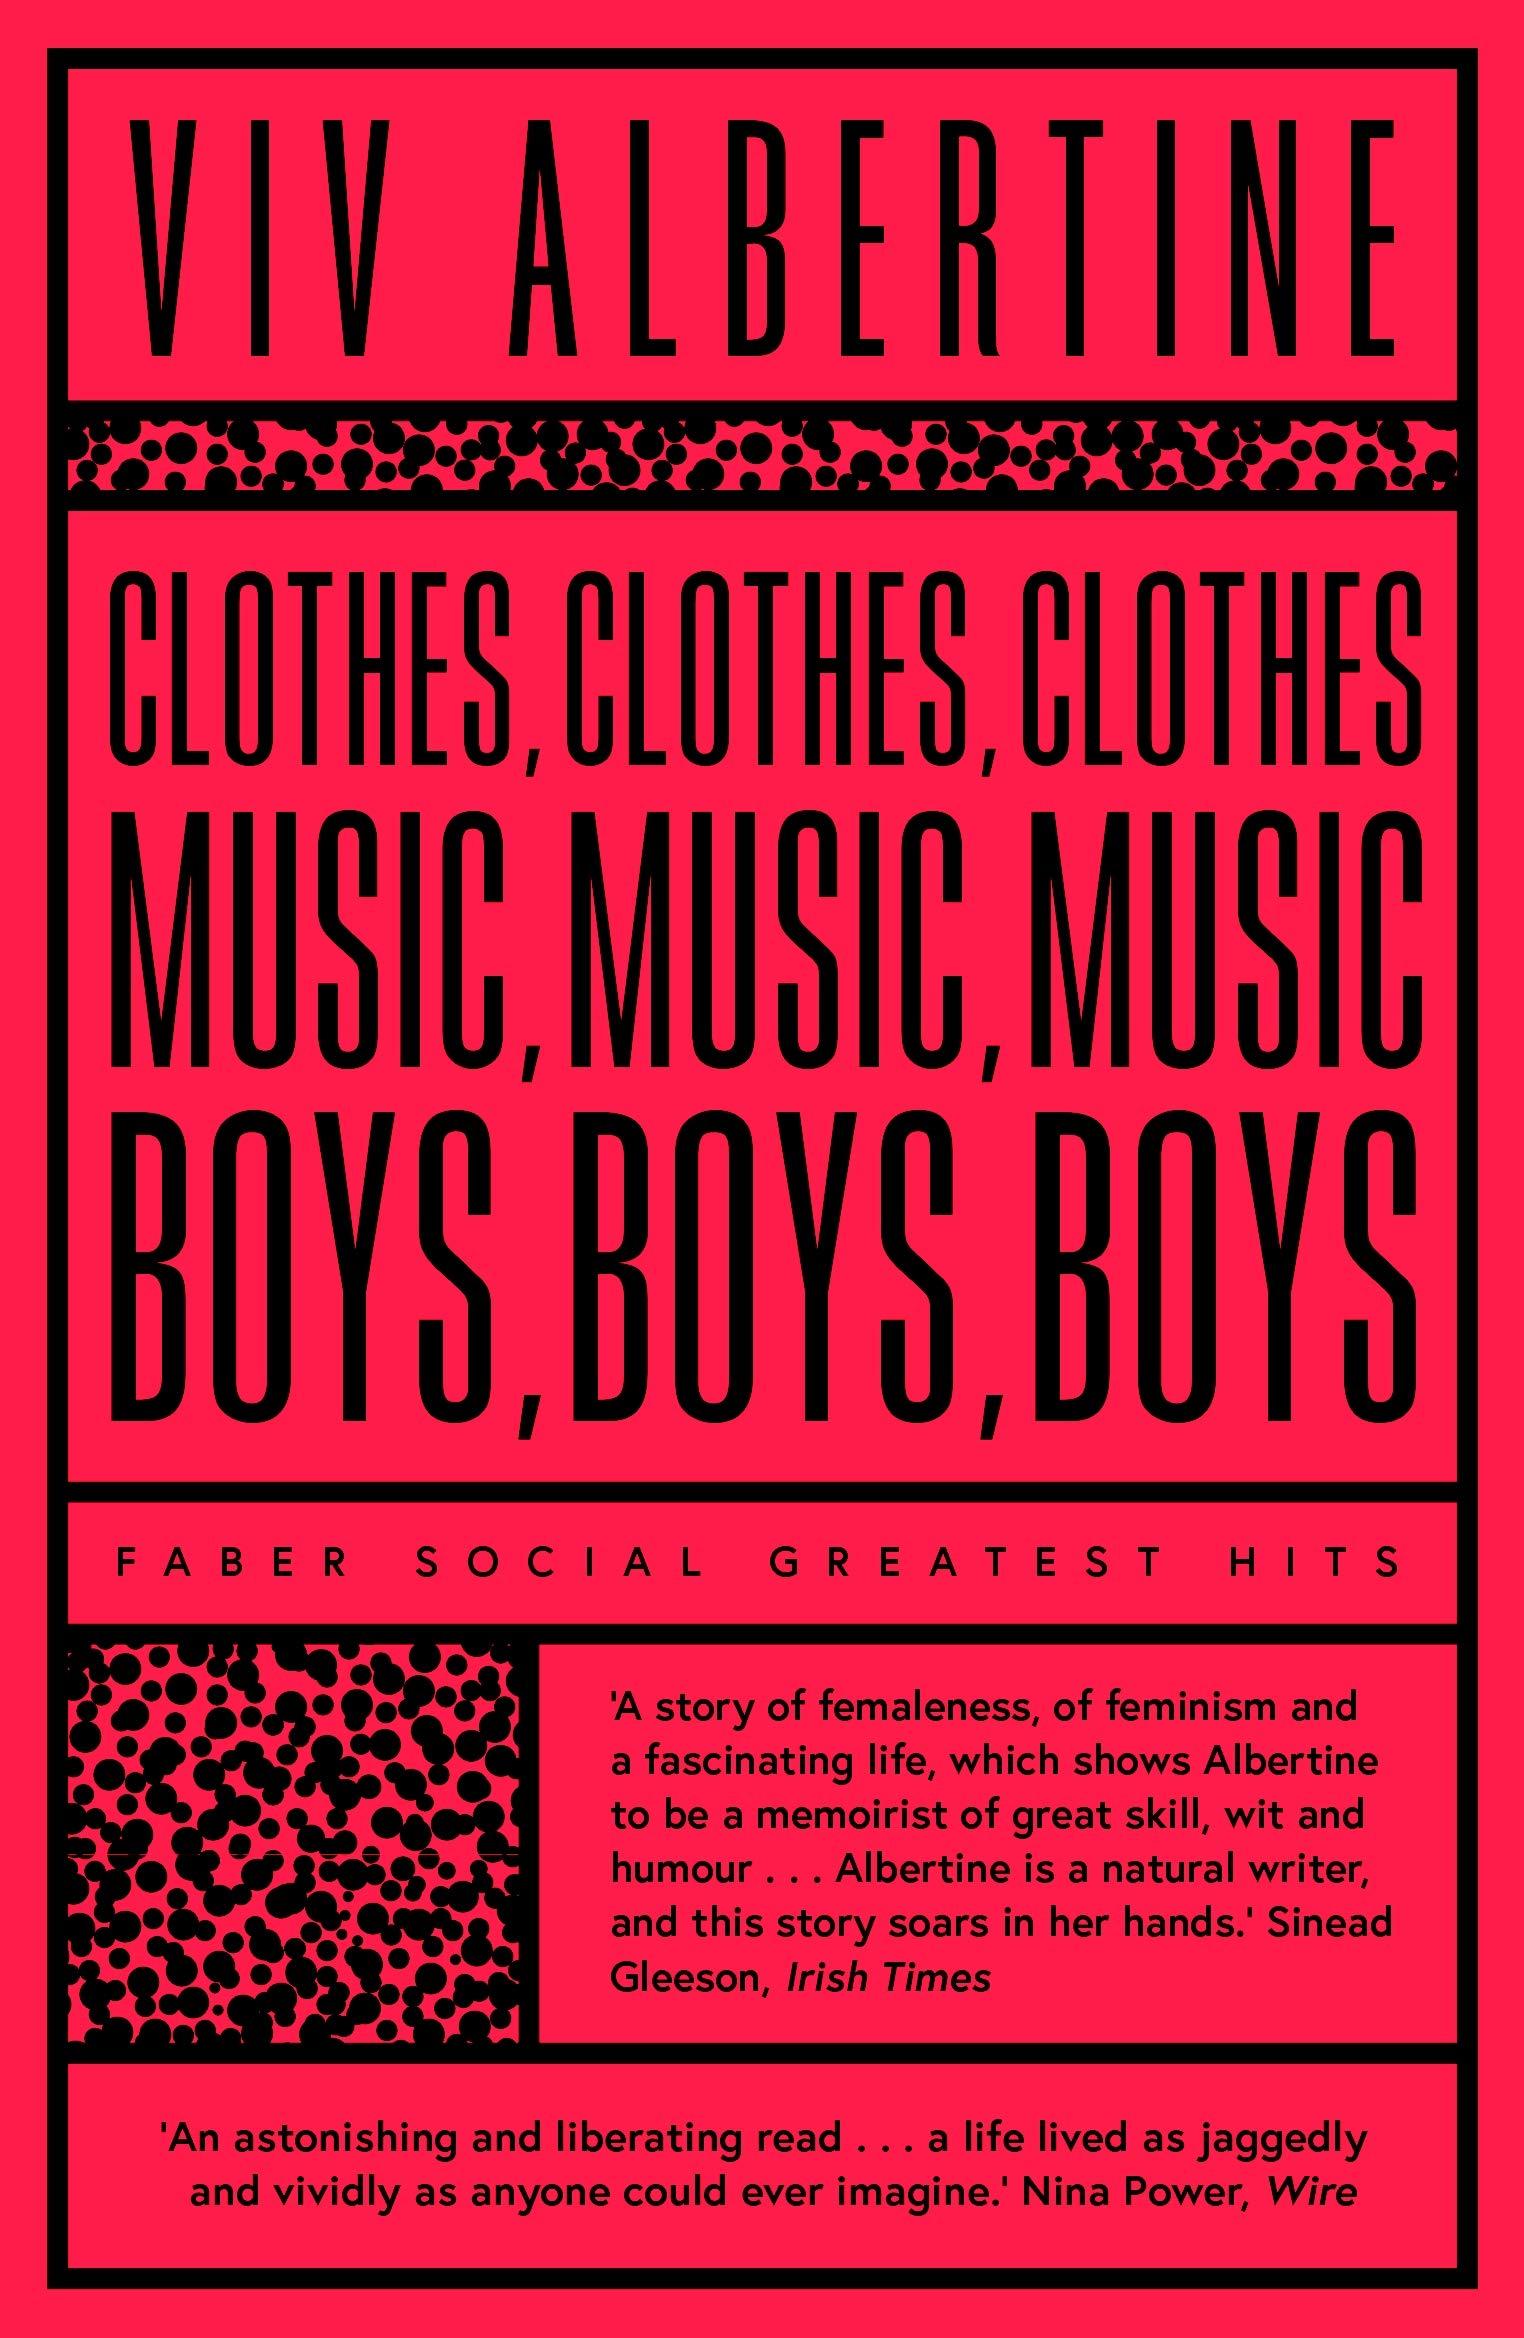 CLOTHES, CLOTHES, CLOTHES. MUSIC, MUSIC, MUSIC. BO